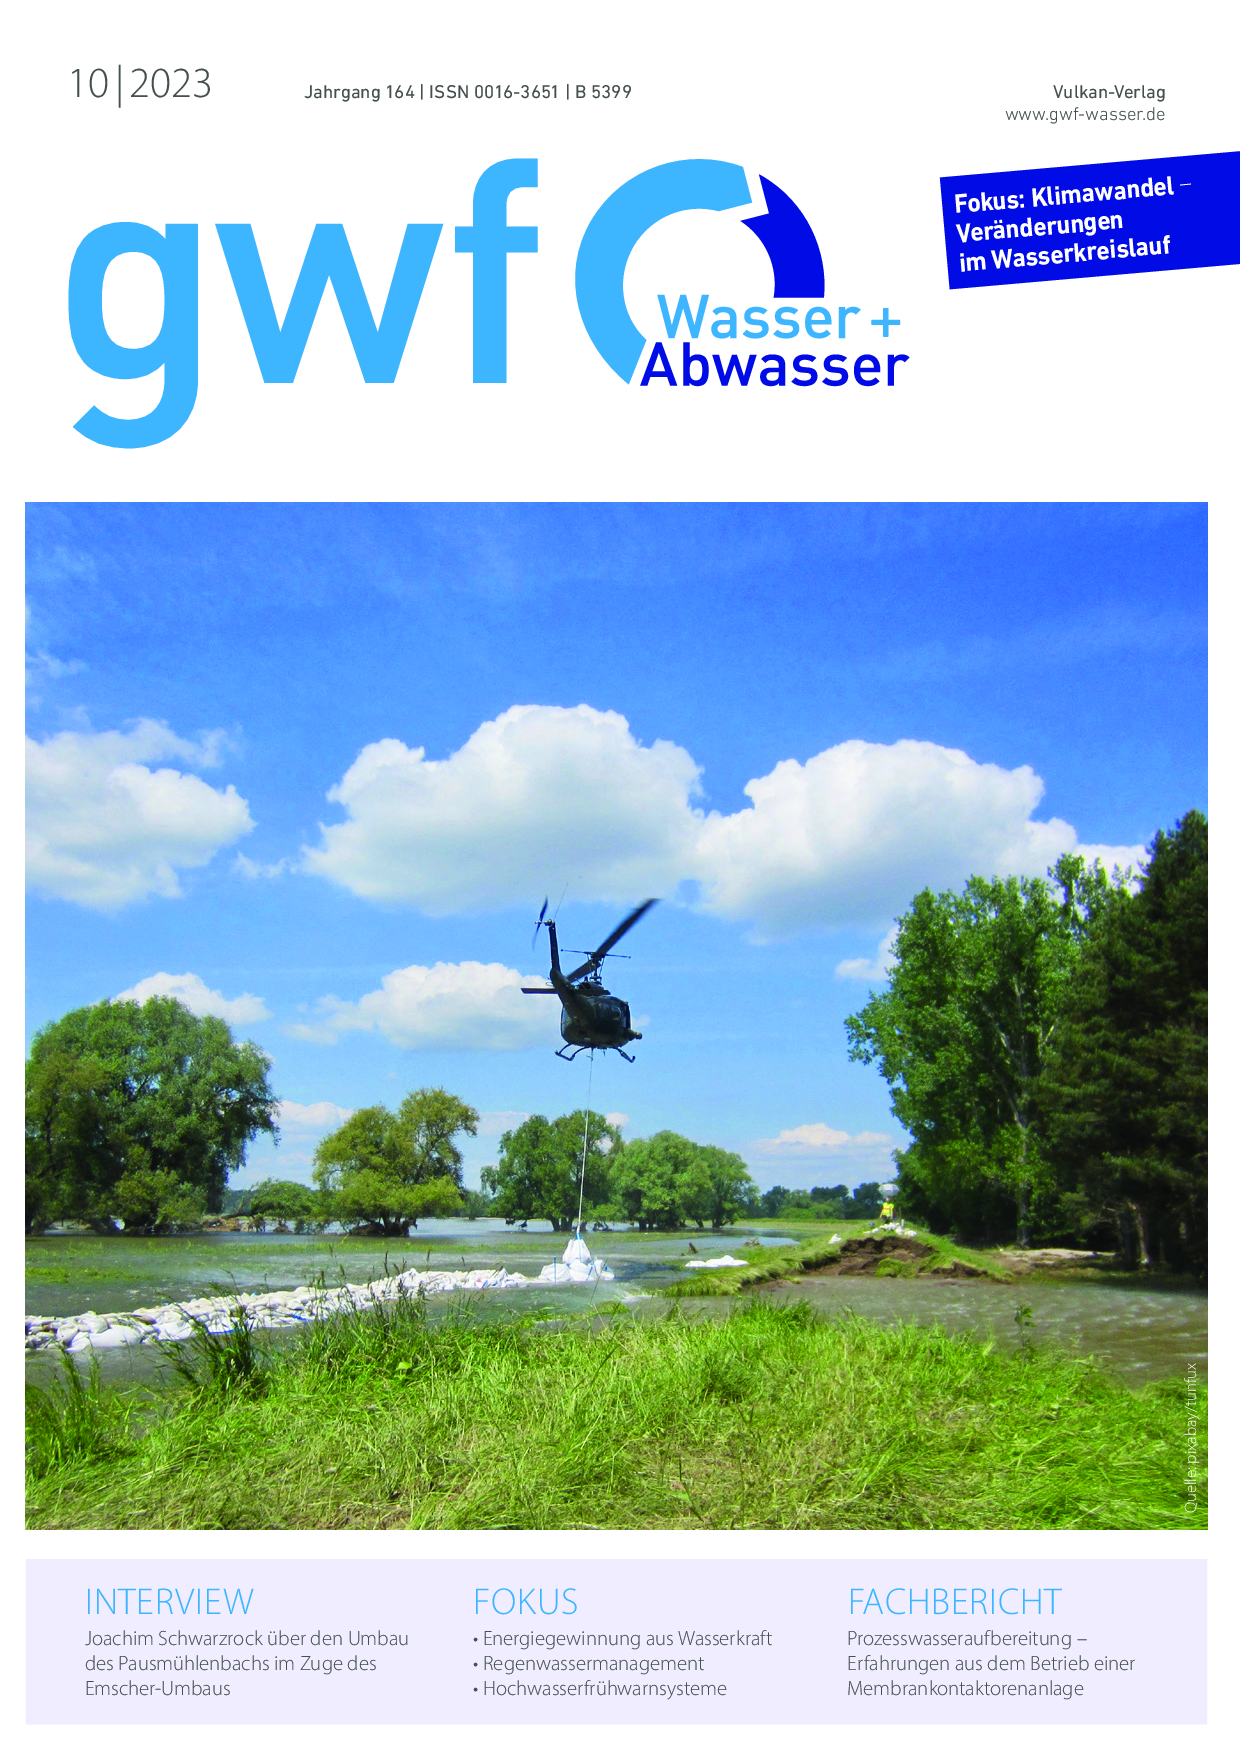 gwf - Wasser|Abwasser - 10 2023